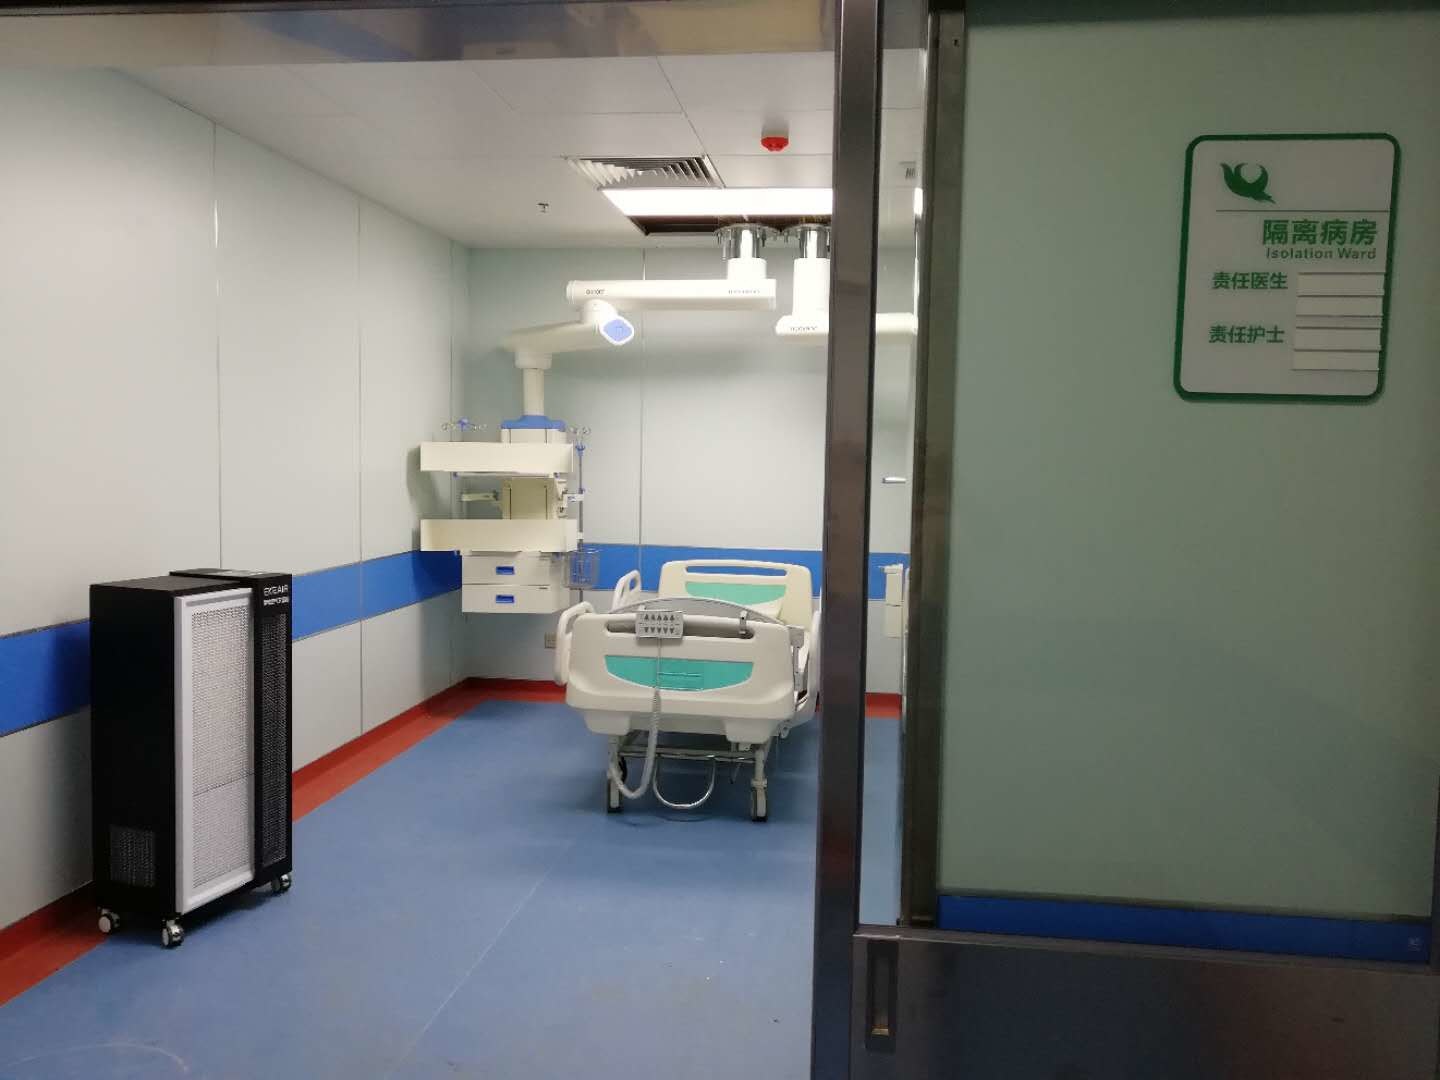 τελευταία εταιρεία περί Νέα πανεπιστημιούπολη, τέταρτο νοσοκομείο του ιατρικού πανεπιστημίου Anhui